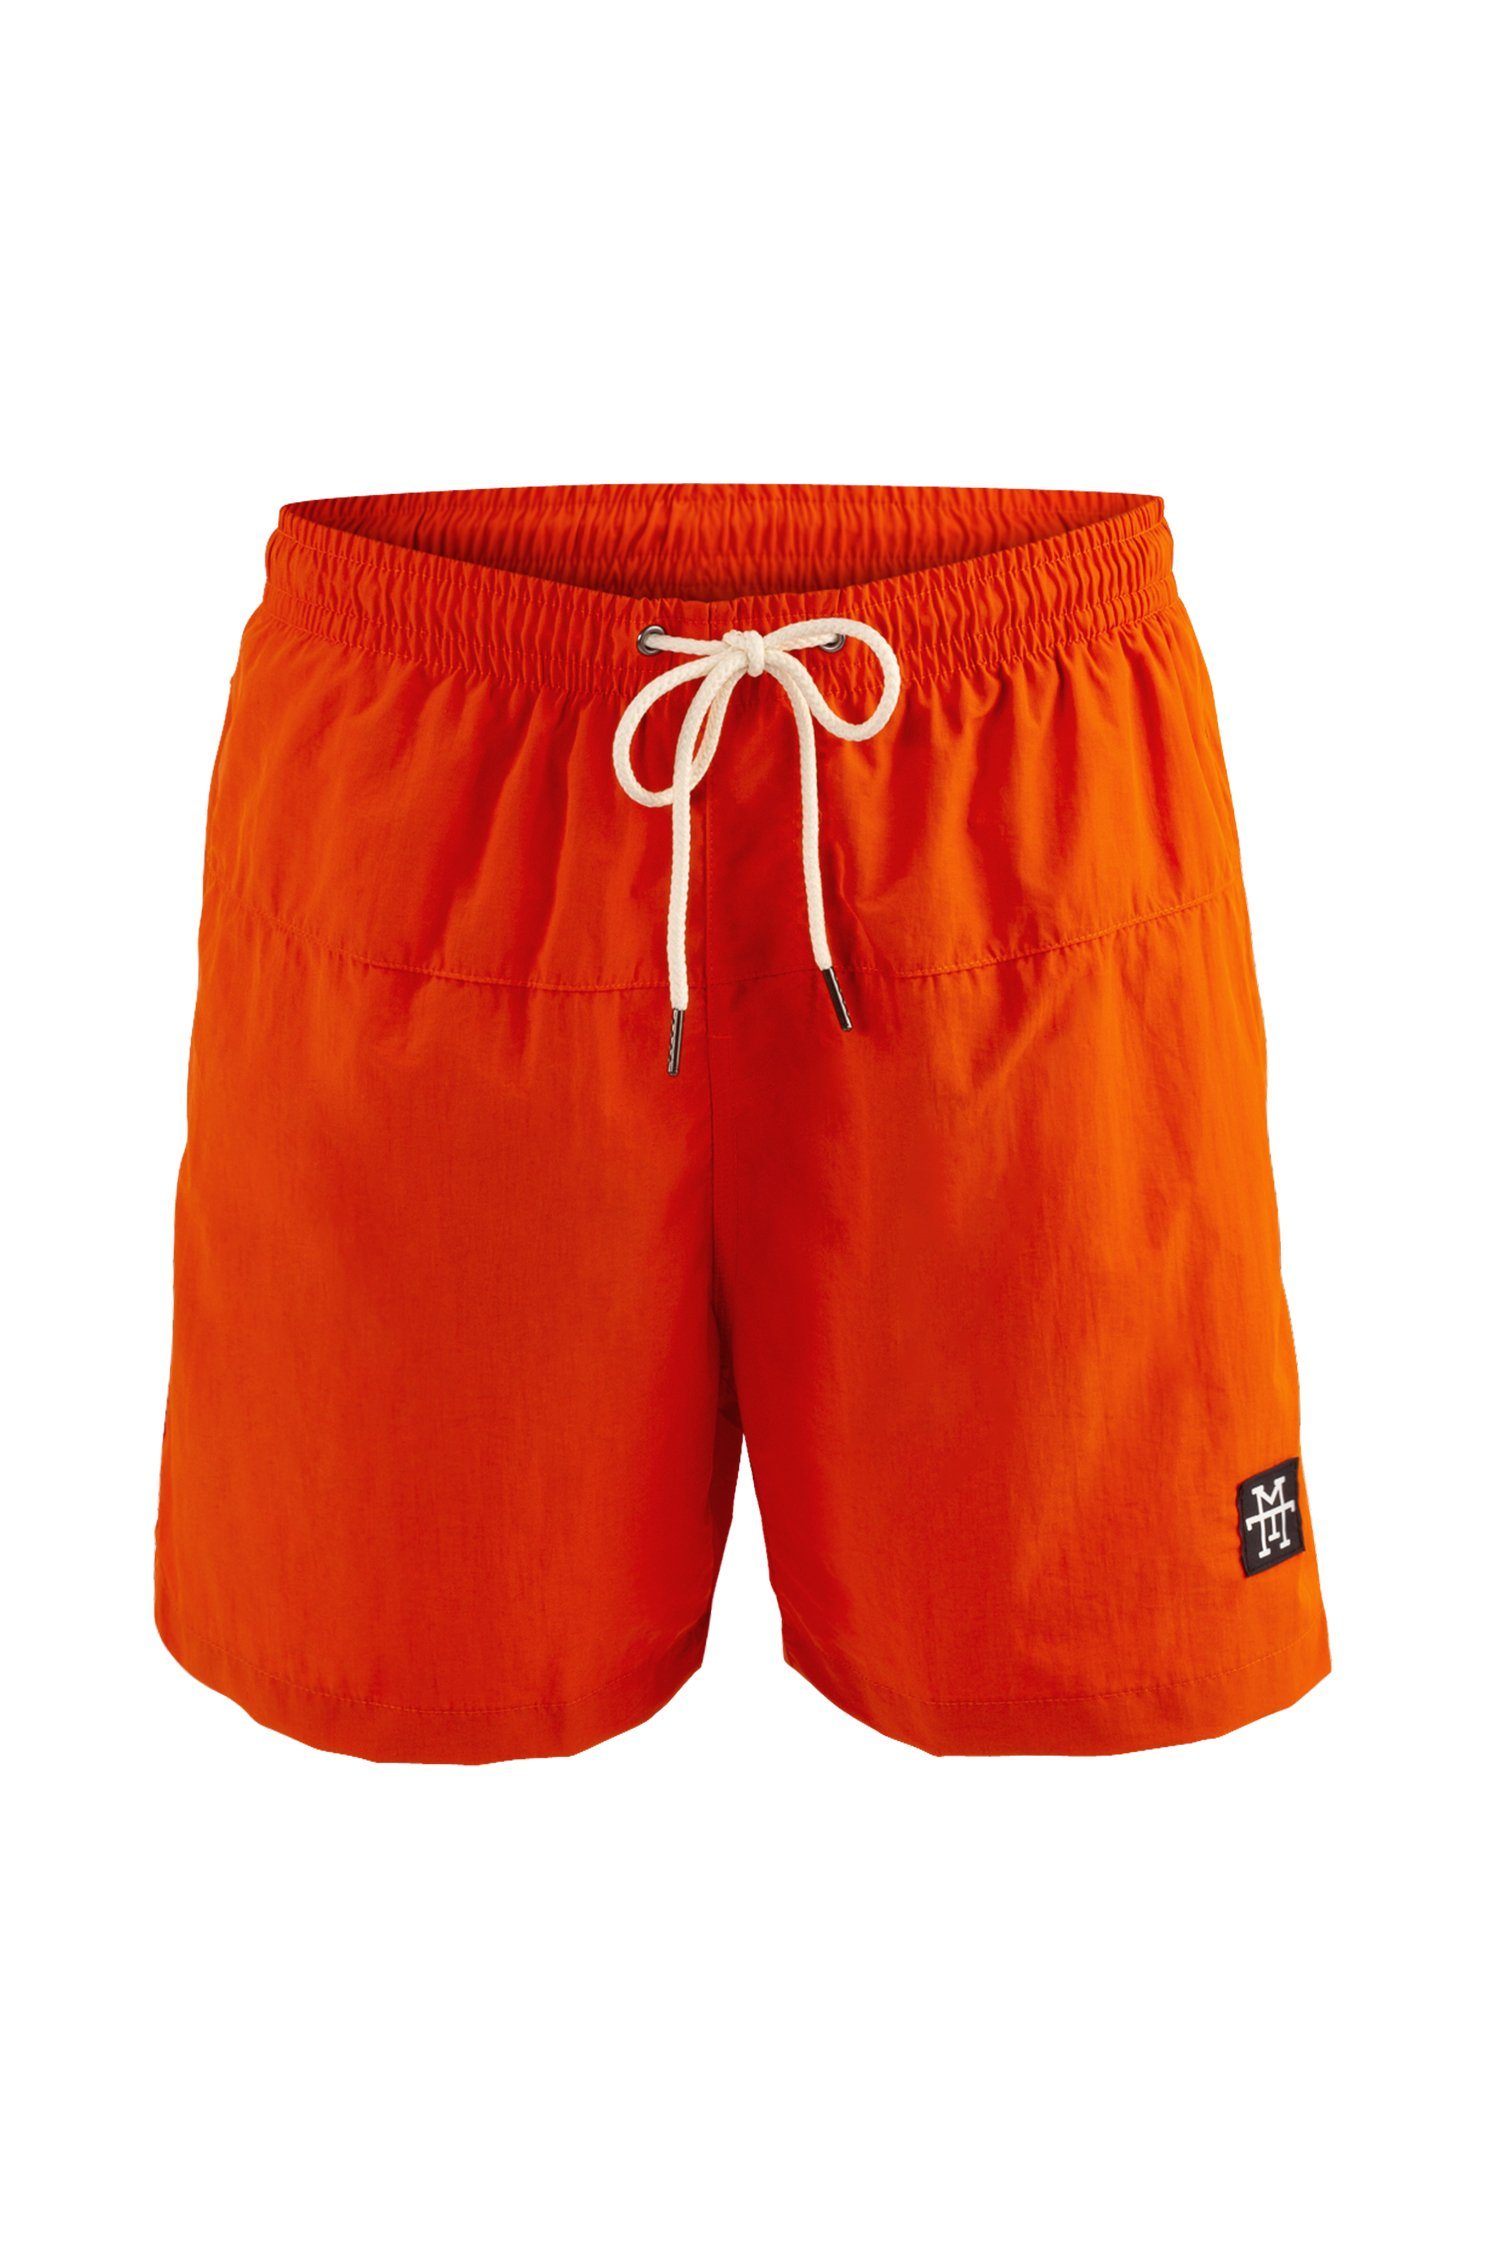 schnelltrocknend Badehosen Manufaktur13 Tangerine Shorts - Swim Badeshorts